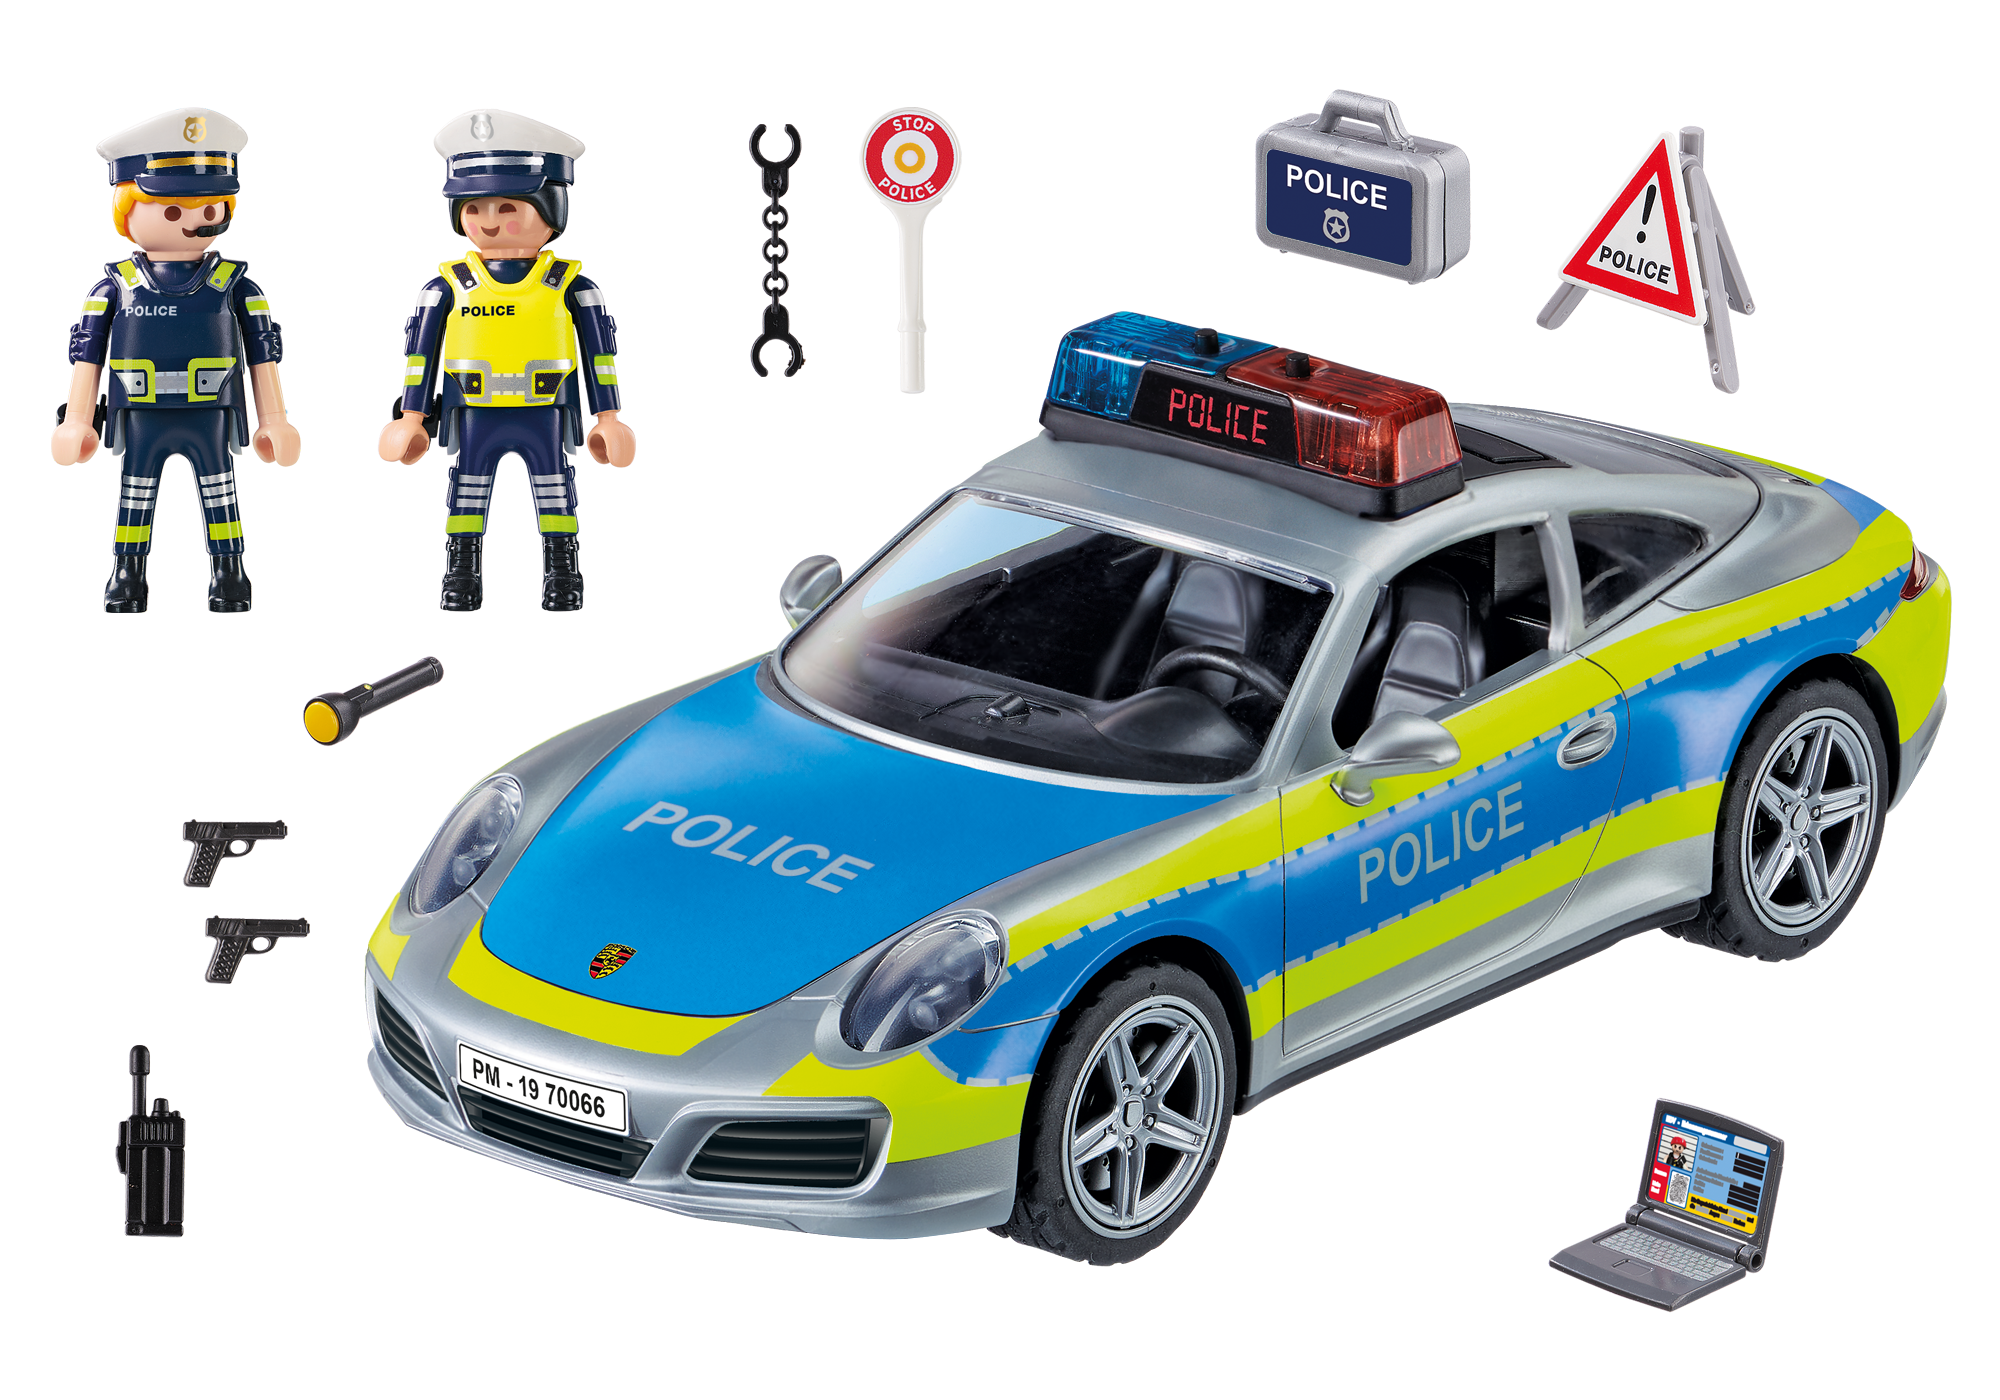 playmobil porsche police